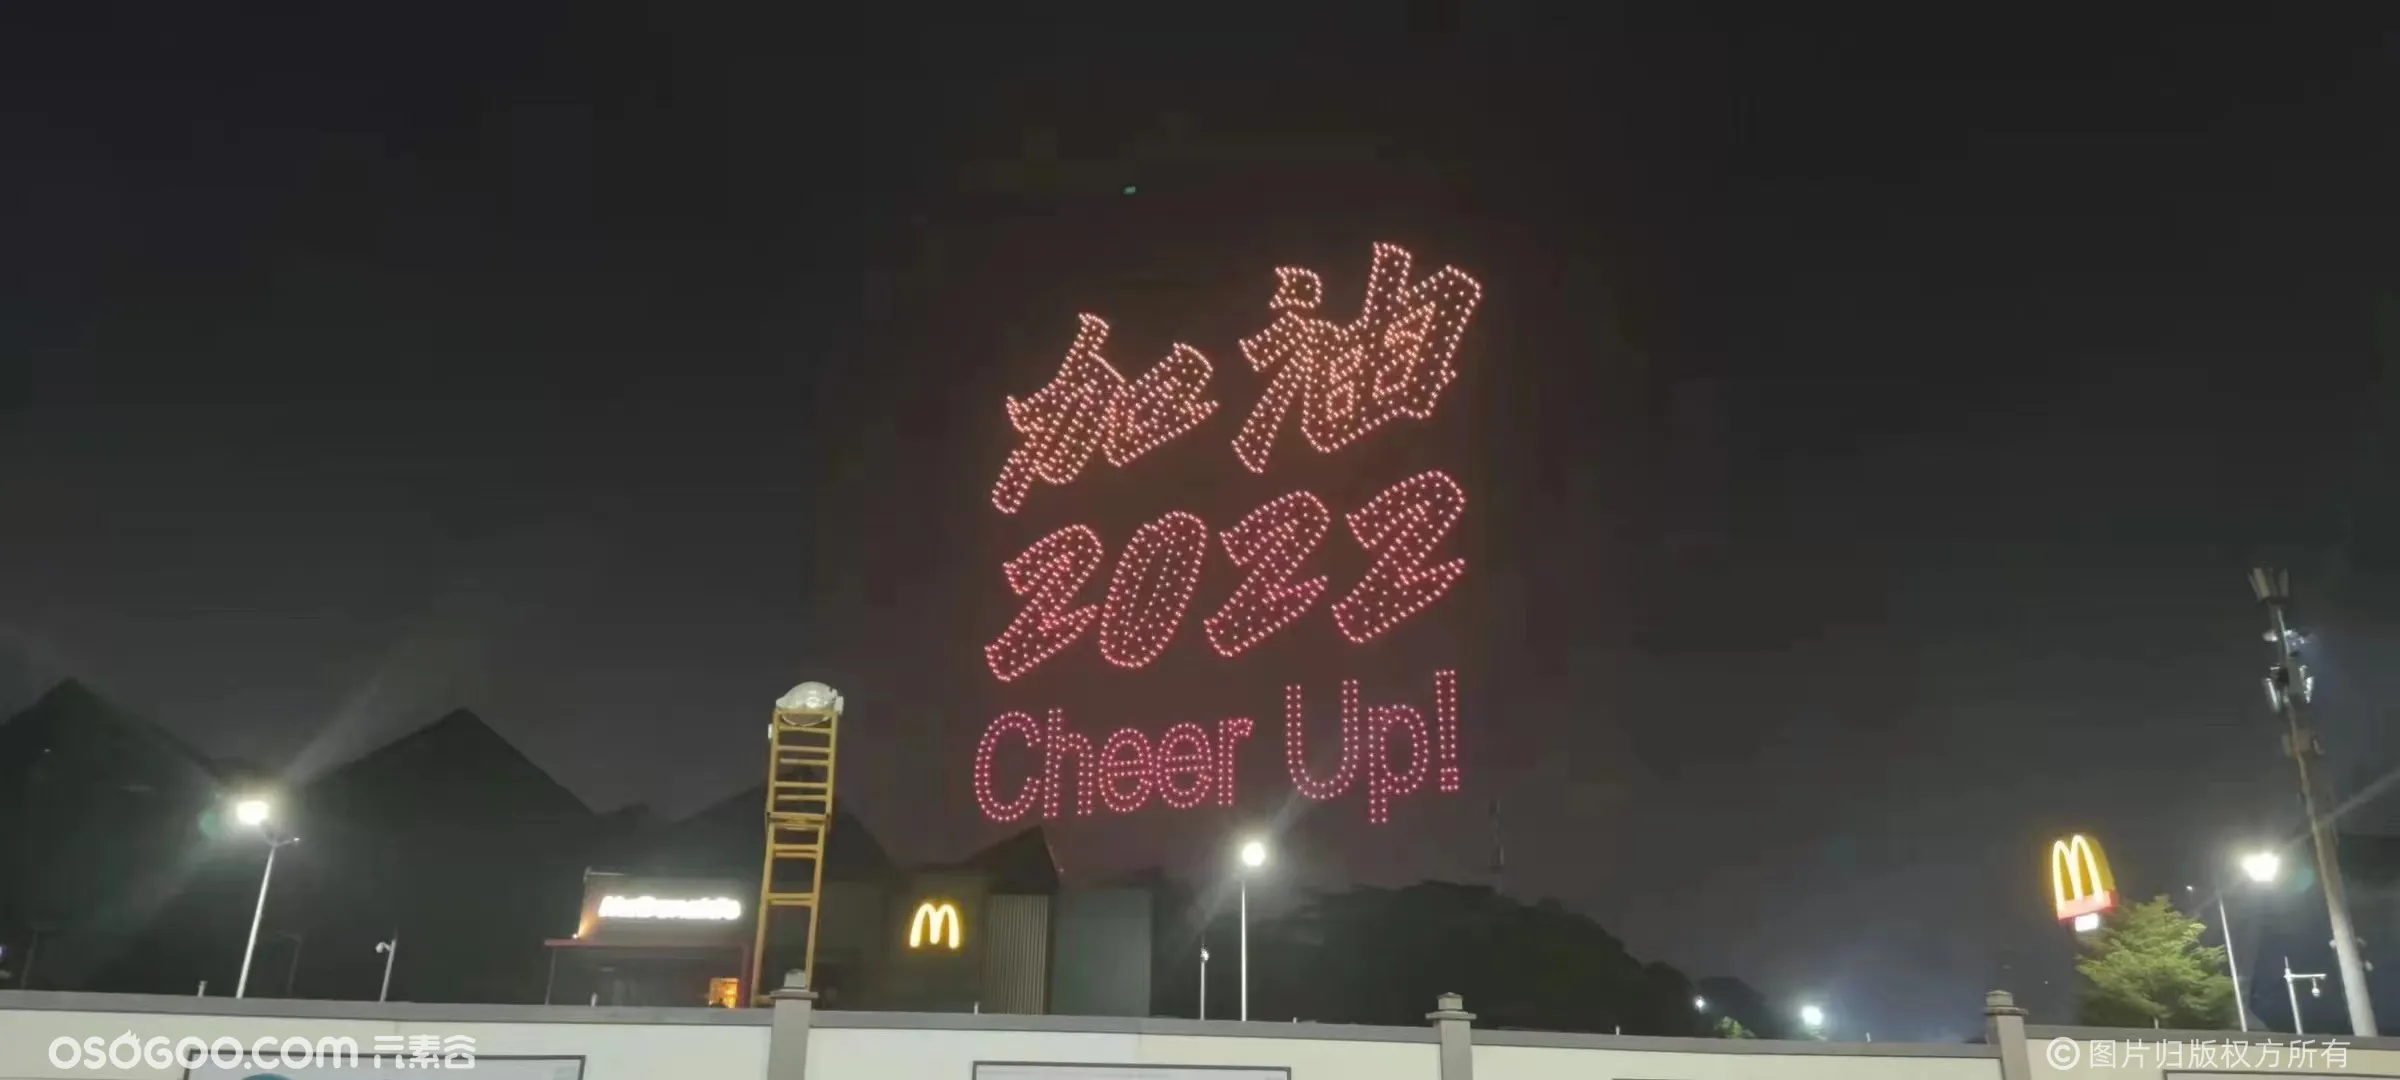 深圳跨年喜迎新年 2022台无人机闪耀夜空